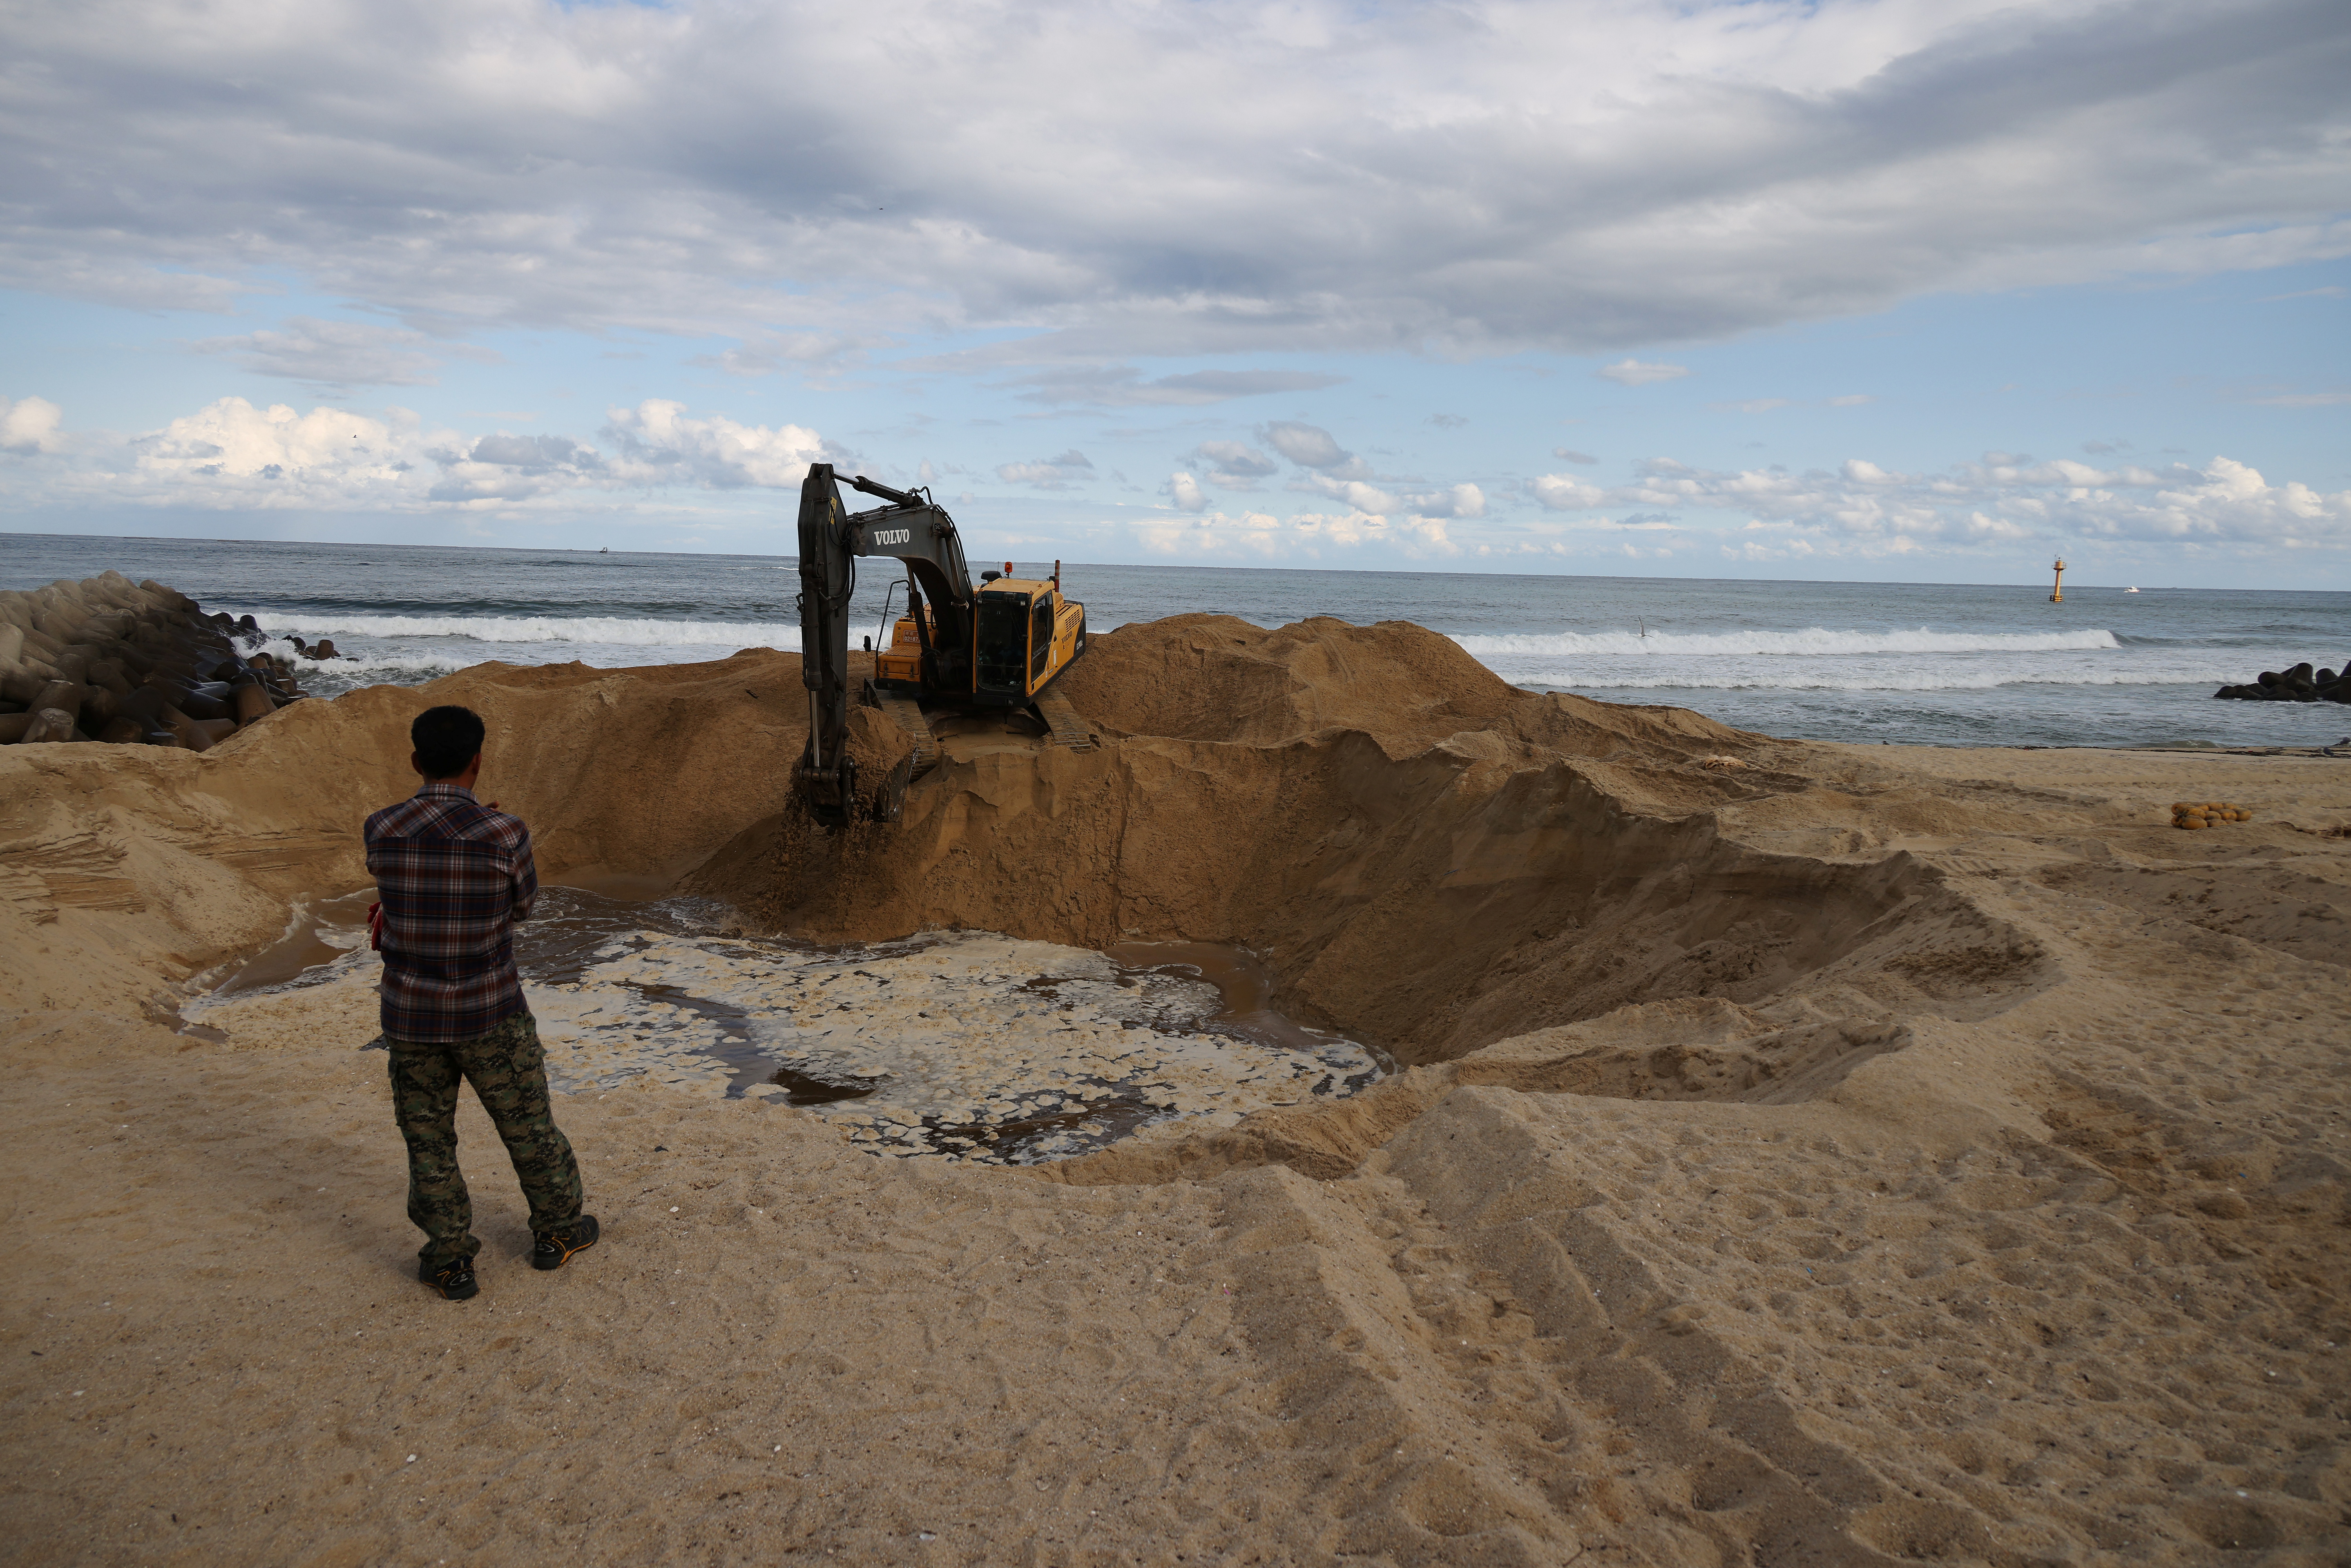 La arena es vital para el sector de la construcción, dado que mezclada con el cemento produce el hormigón tan esencial en la mayoría de las infraestructuras, y también es necesaria para la fabricación de vidrio y asfalto, o para ganar tierras al mar (REUTERS)